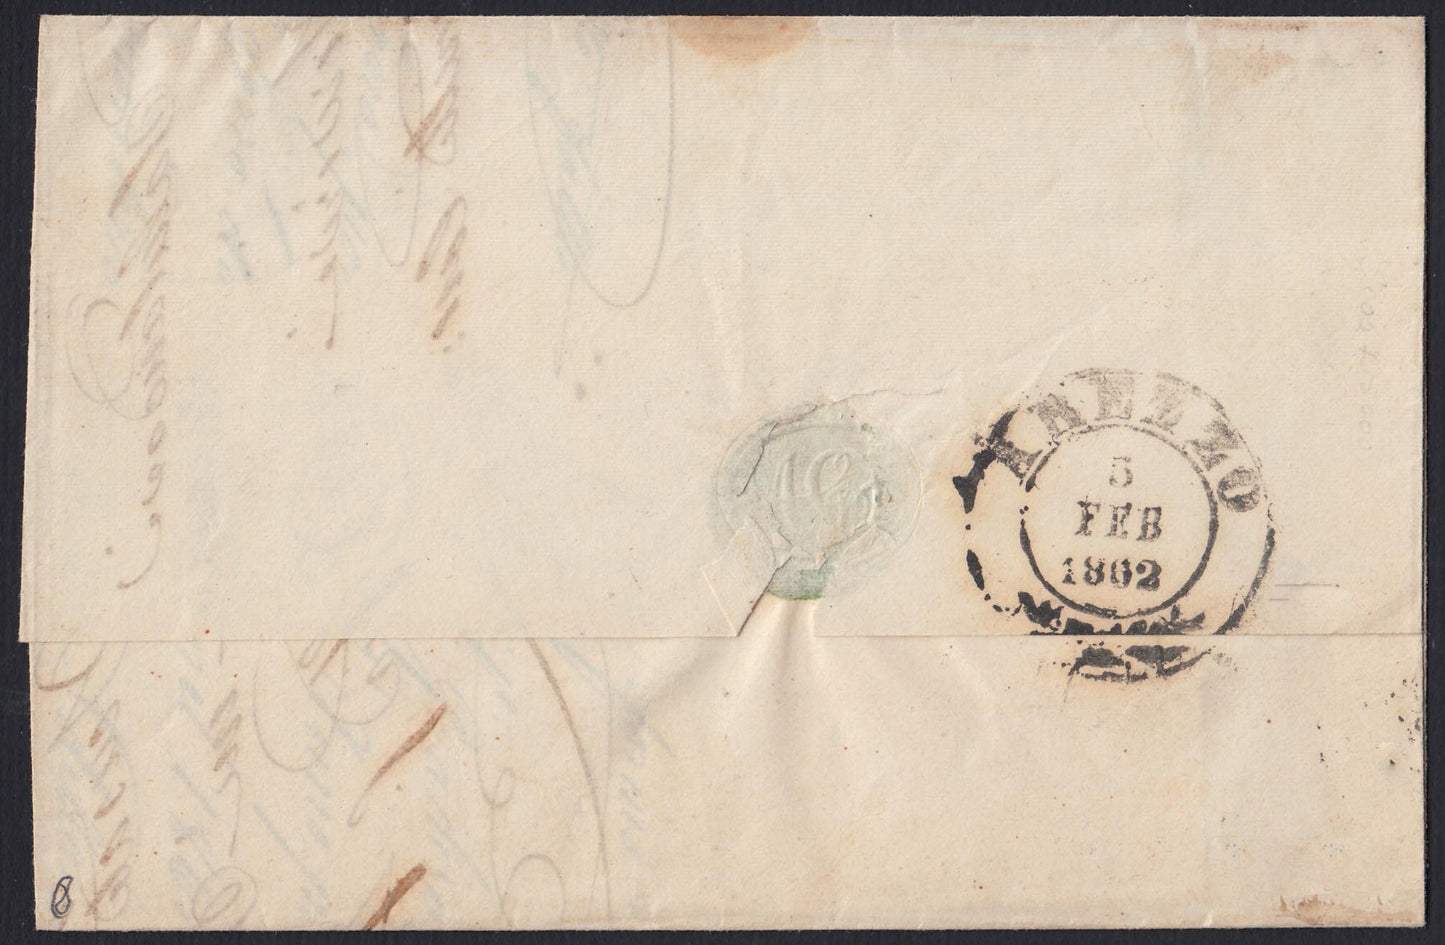 183 - 1862  Lettera spedita da Pratovecchio per Arezzo 3/2/62 affrancata con c. 10 bruno bistro II tavola (14Co).